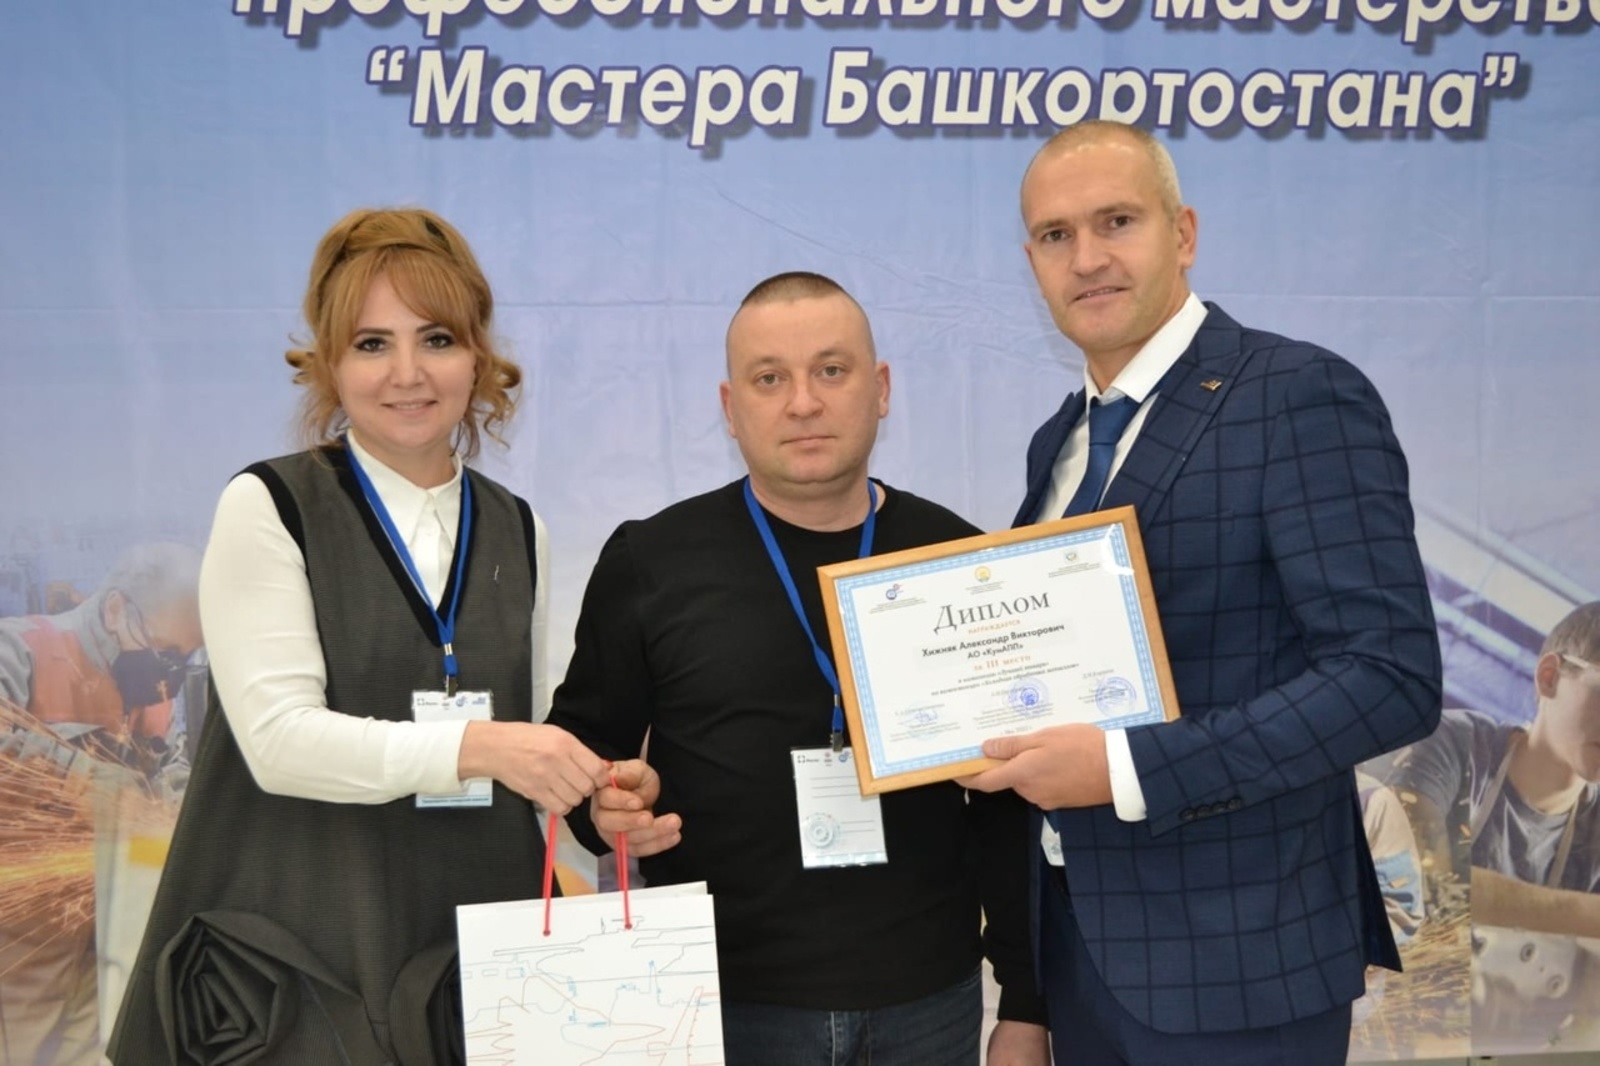 Специалисты КумАПП вошли в число лучших мастеров Башкортостана